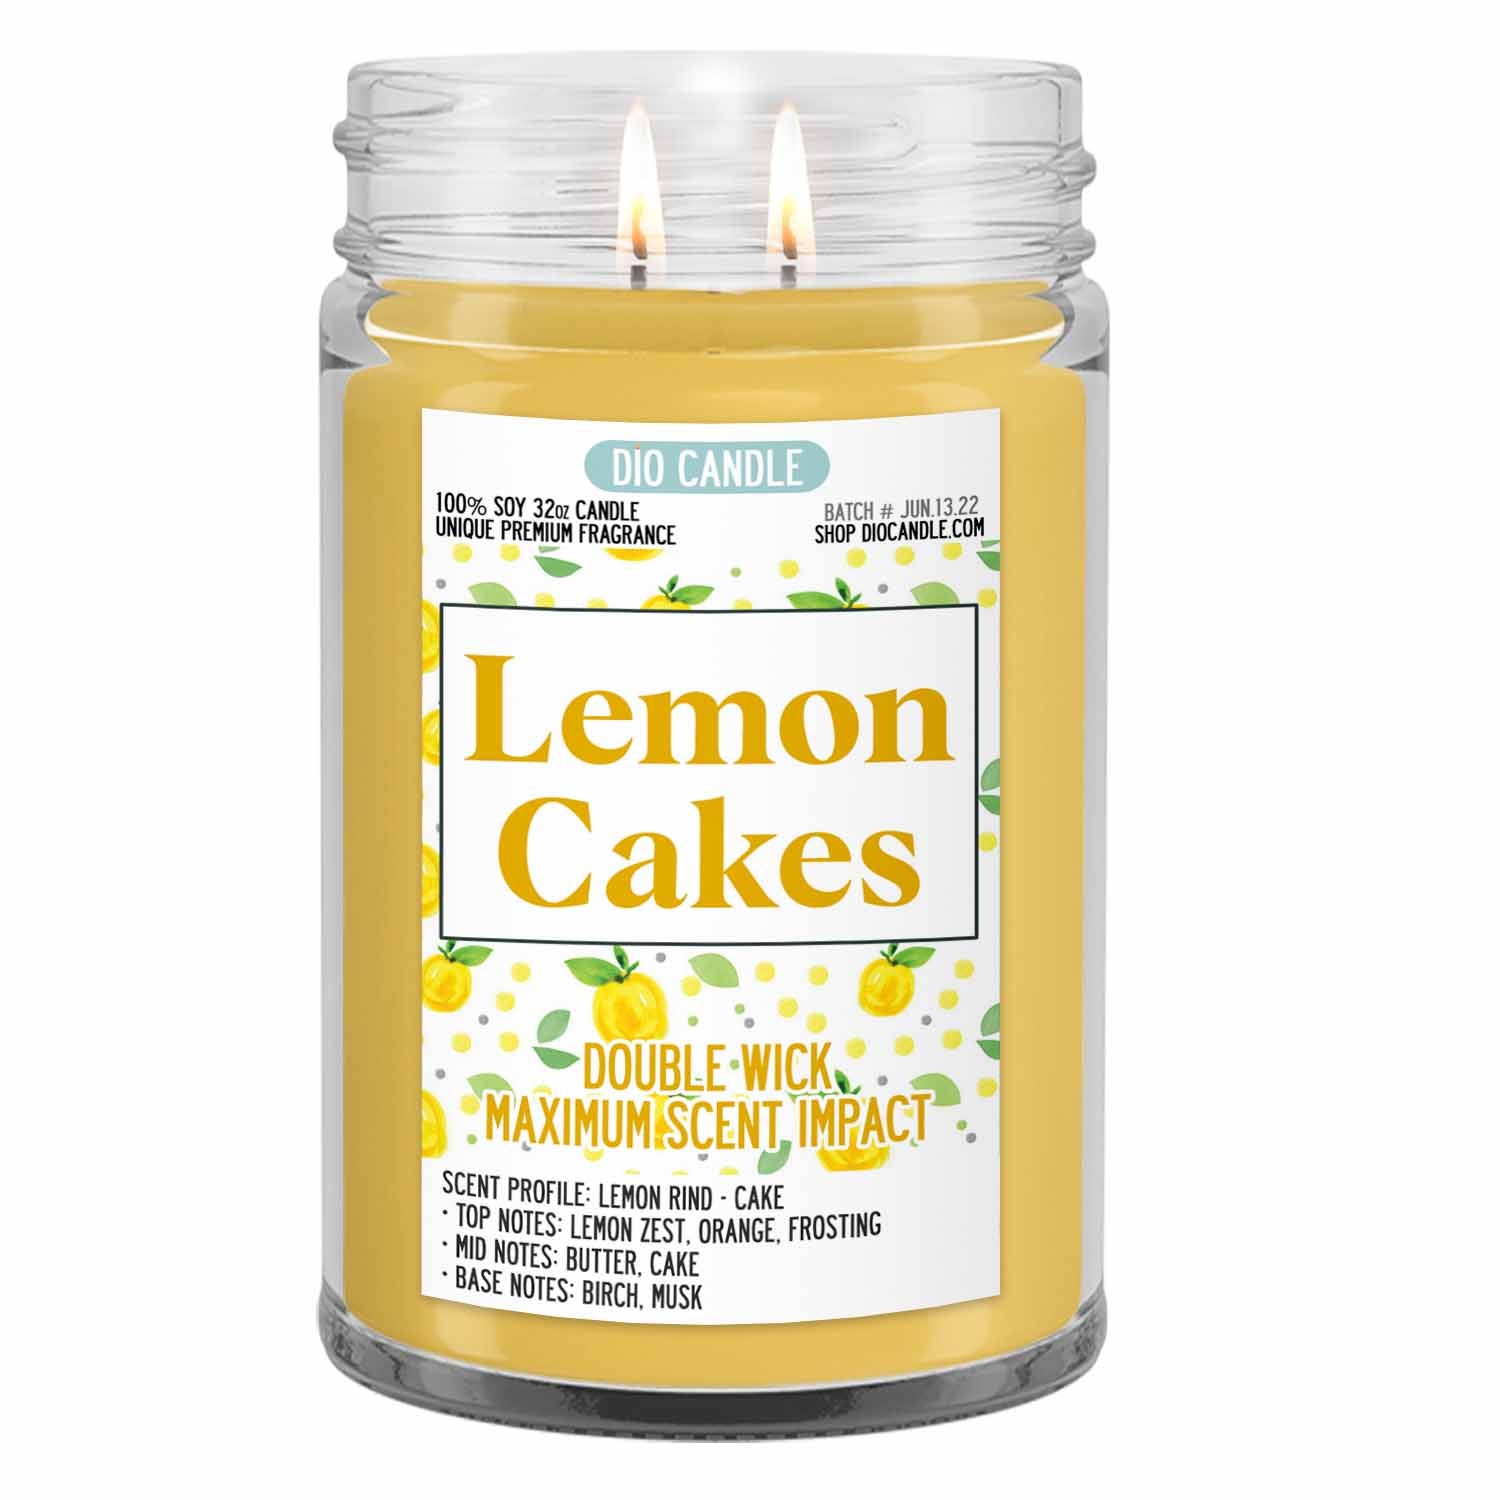 Lemon Cakes Candle